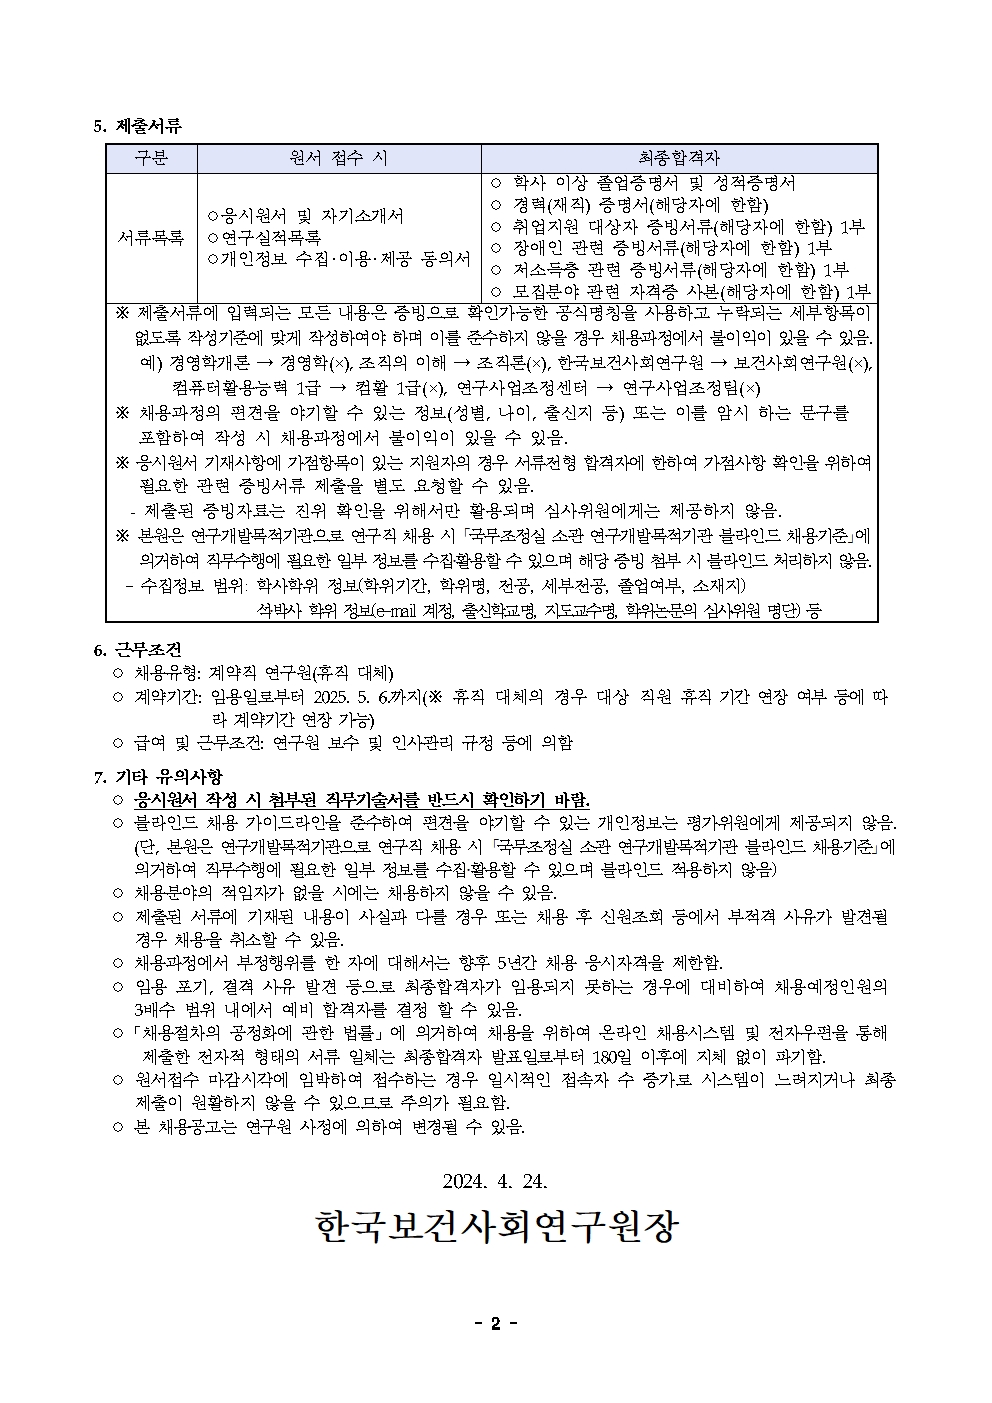 (2/2)[한국보건사회연구원] 계약직 연구원 채용 공고문 - 자세한 내용은 하단 참조